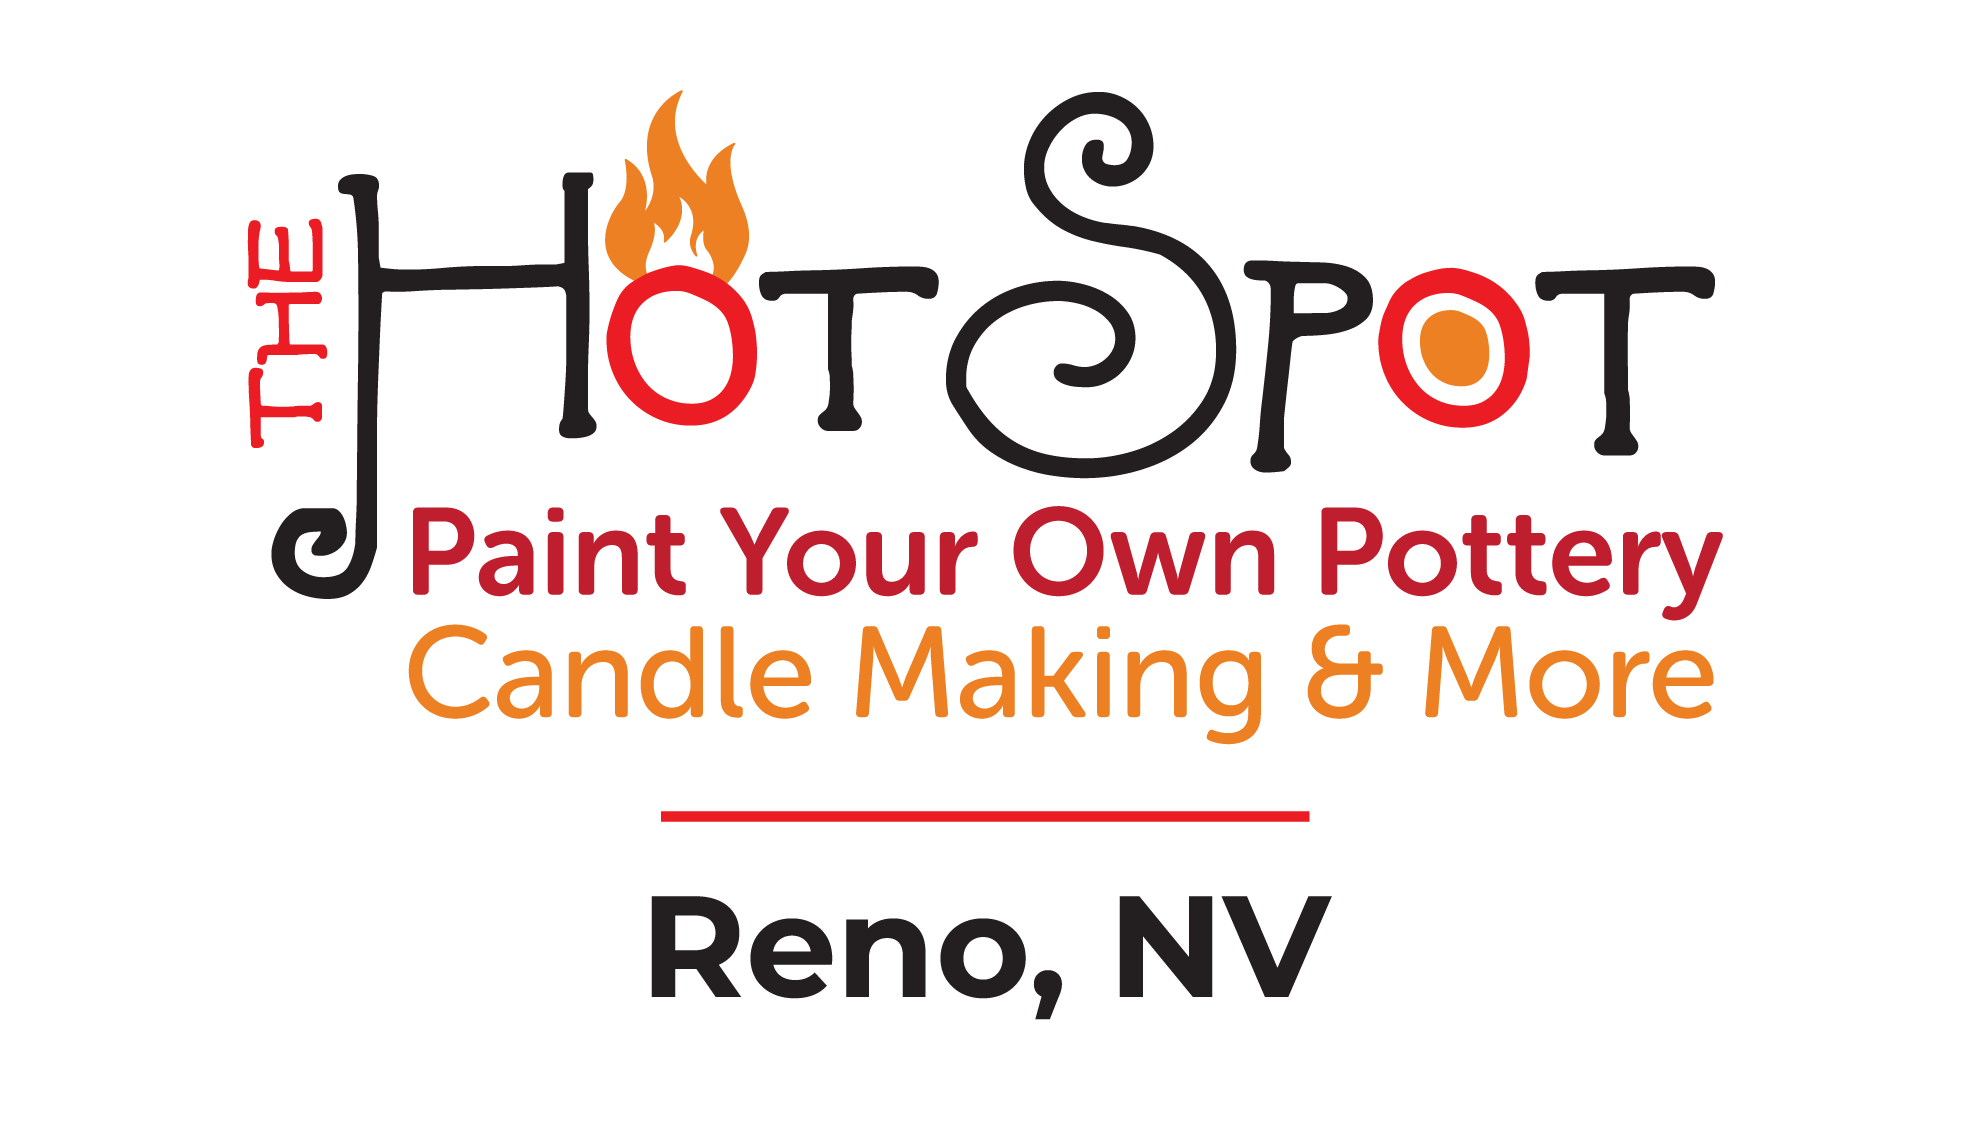 The Hot Spot Studios Reno